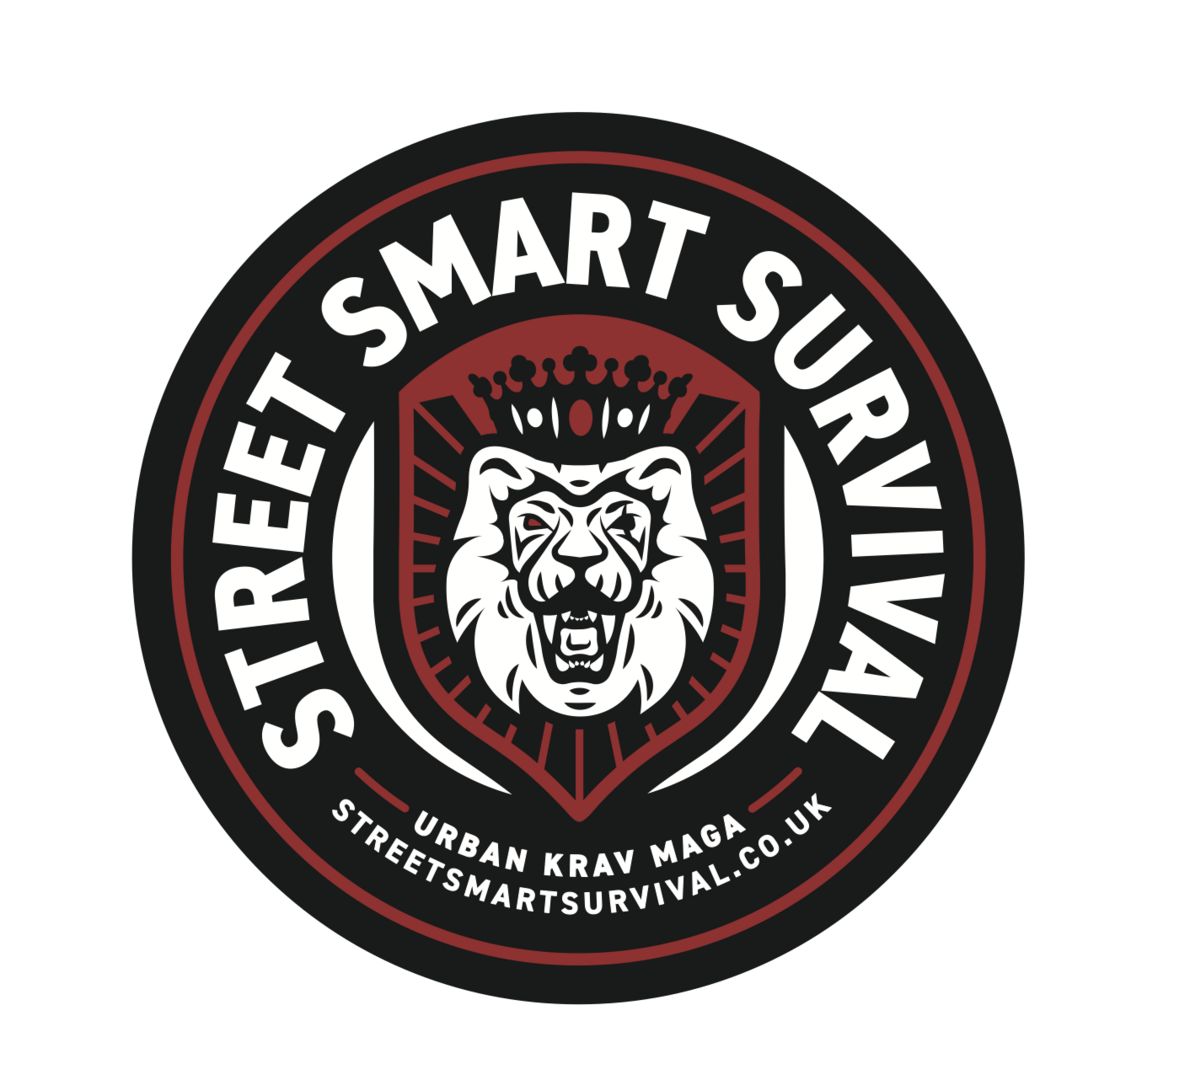 Urban Krav Maga - Self Defence Classes. - Street Smart Survival, London, England, United Kingdom